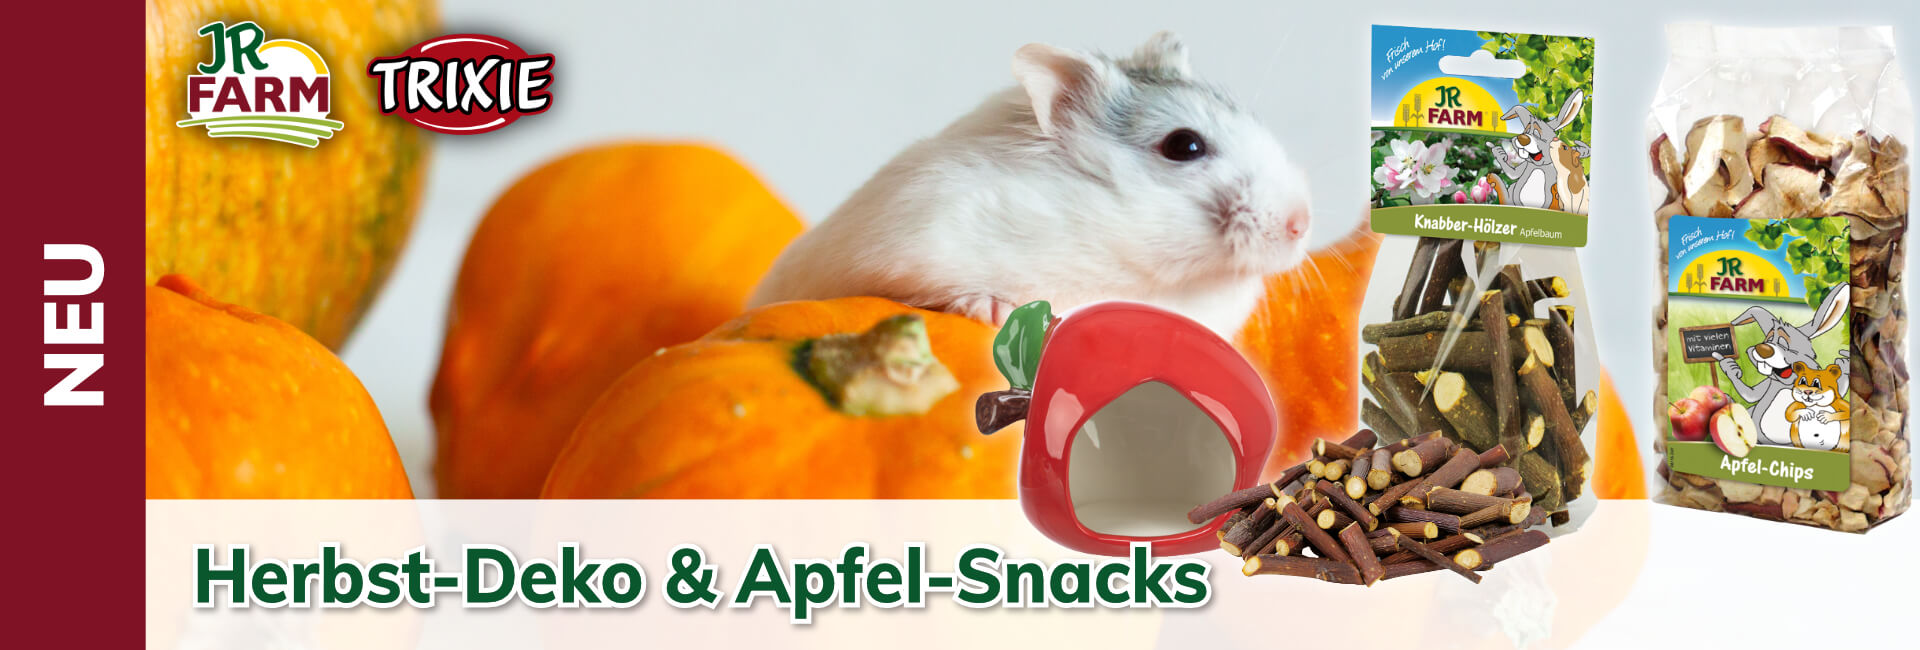 Herbstliche Deko & leckeren Apfel-Snacks